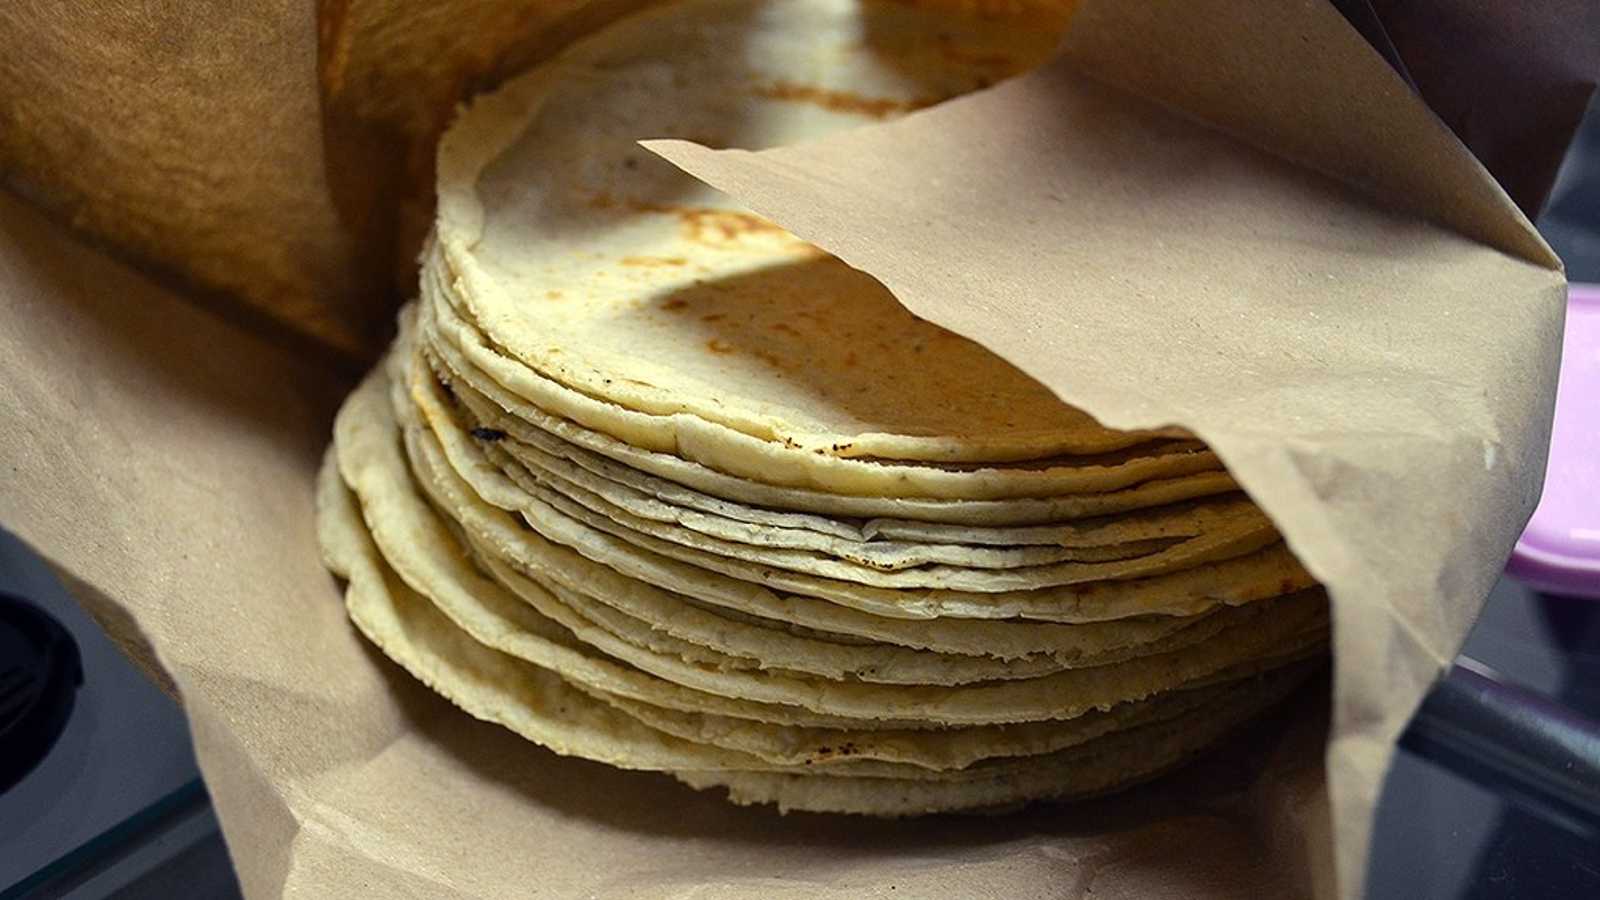 El precio de la tortilla incrementó. |Foto: Imagen